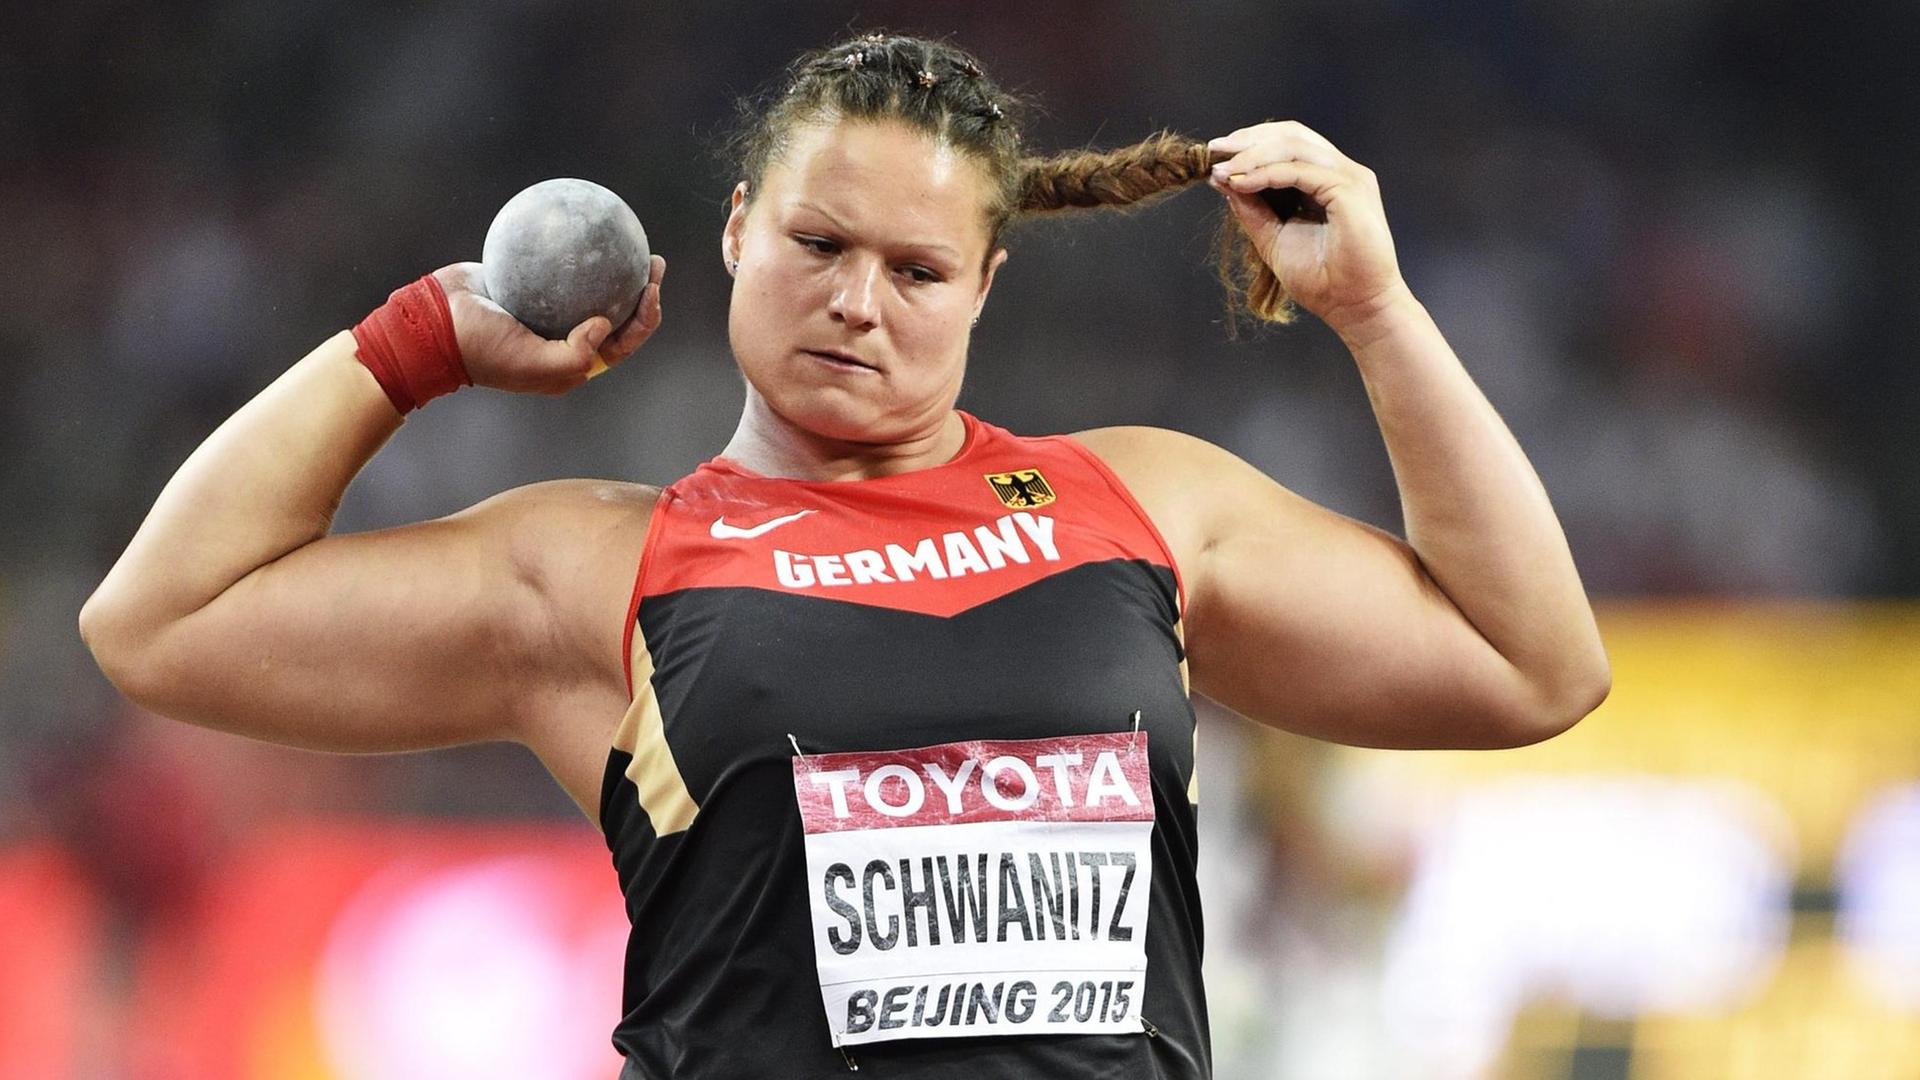 Die Kugel-Stoßerin Christina Schwanitz beim Wett-Kampf